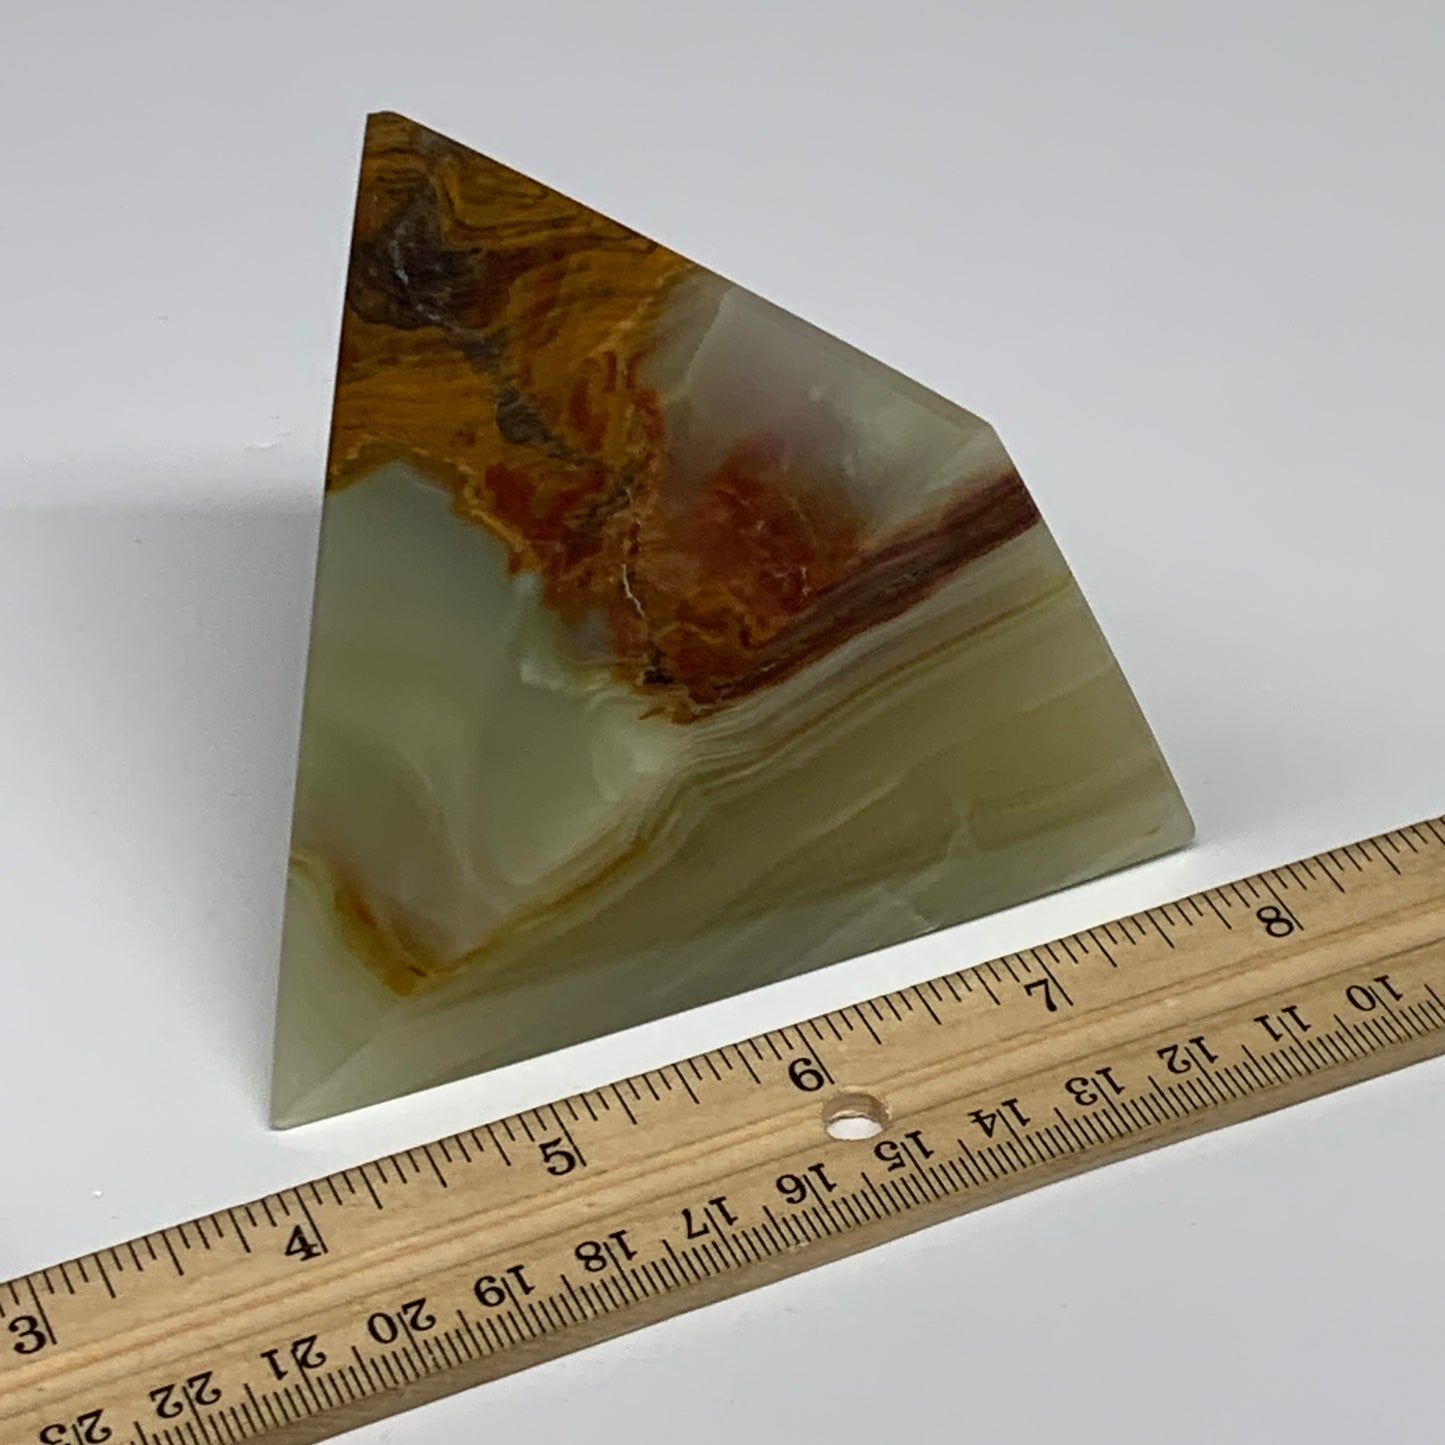 1.14 lbs, 3.2"x3"x3.1", Green Onyx Pyramid Gemstone Crystal, B32471